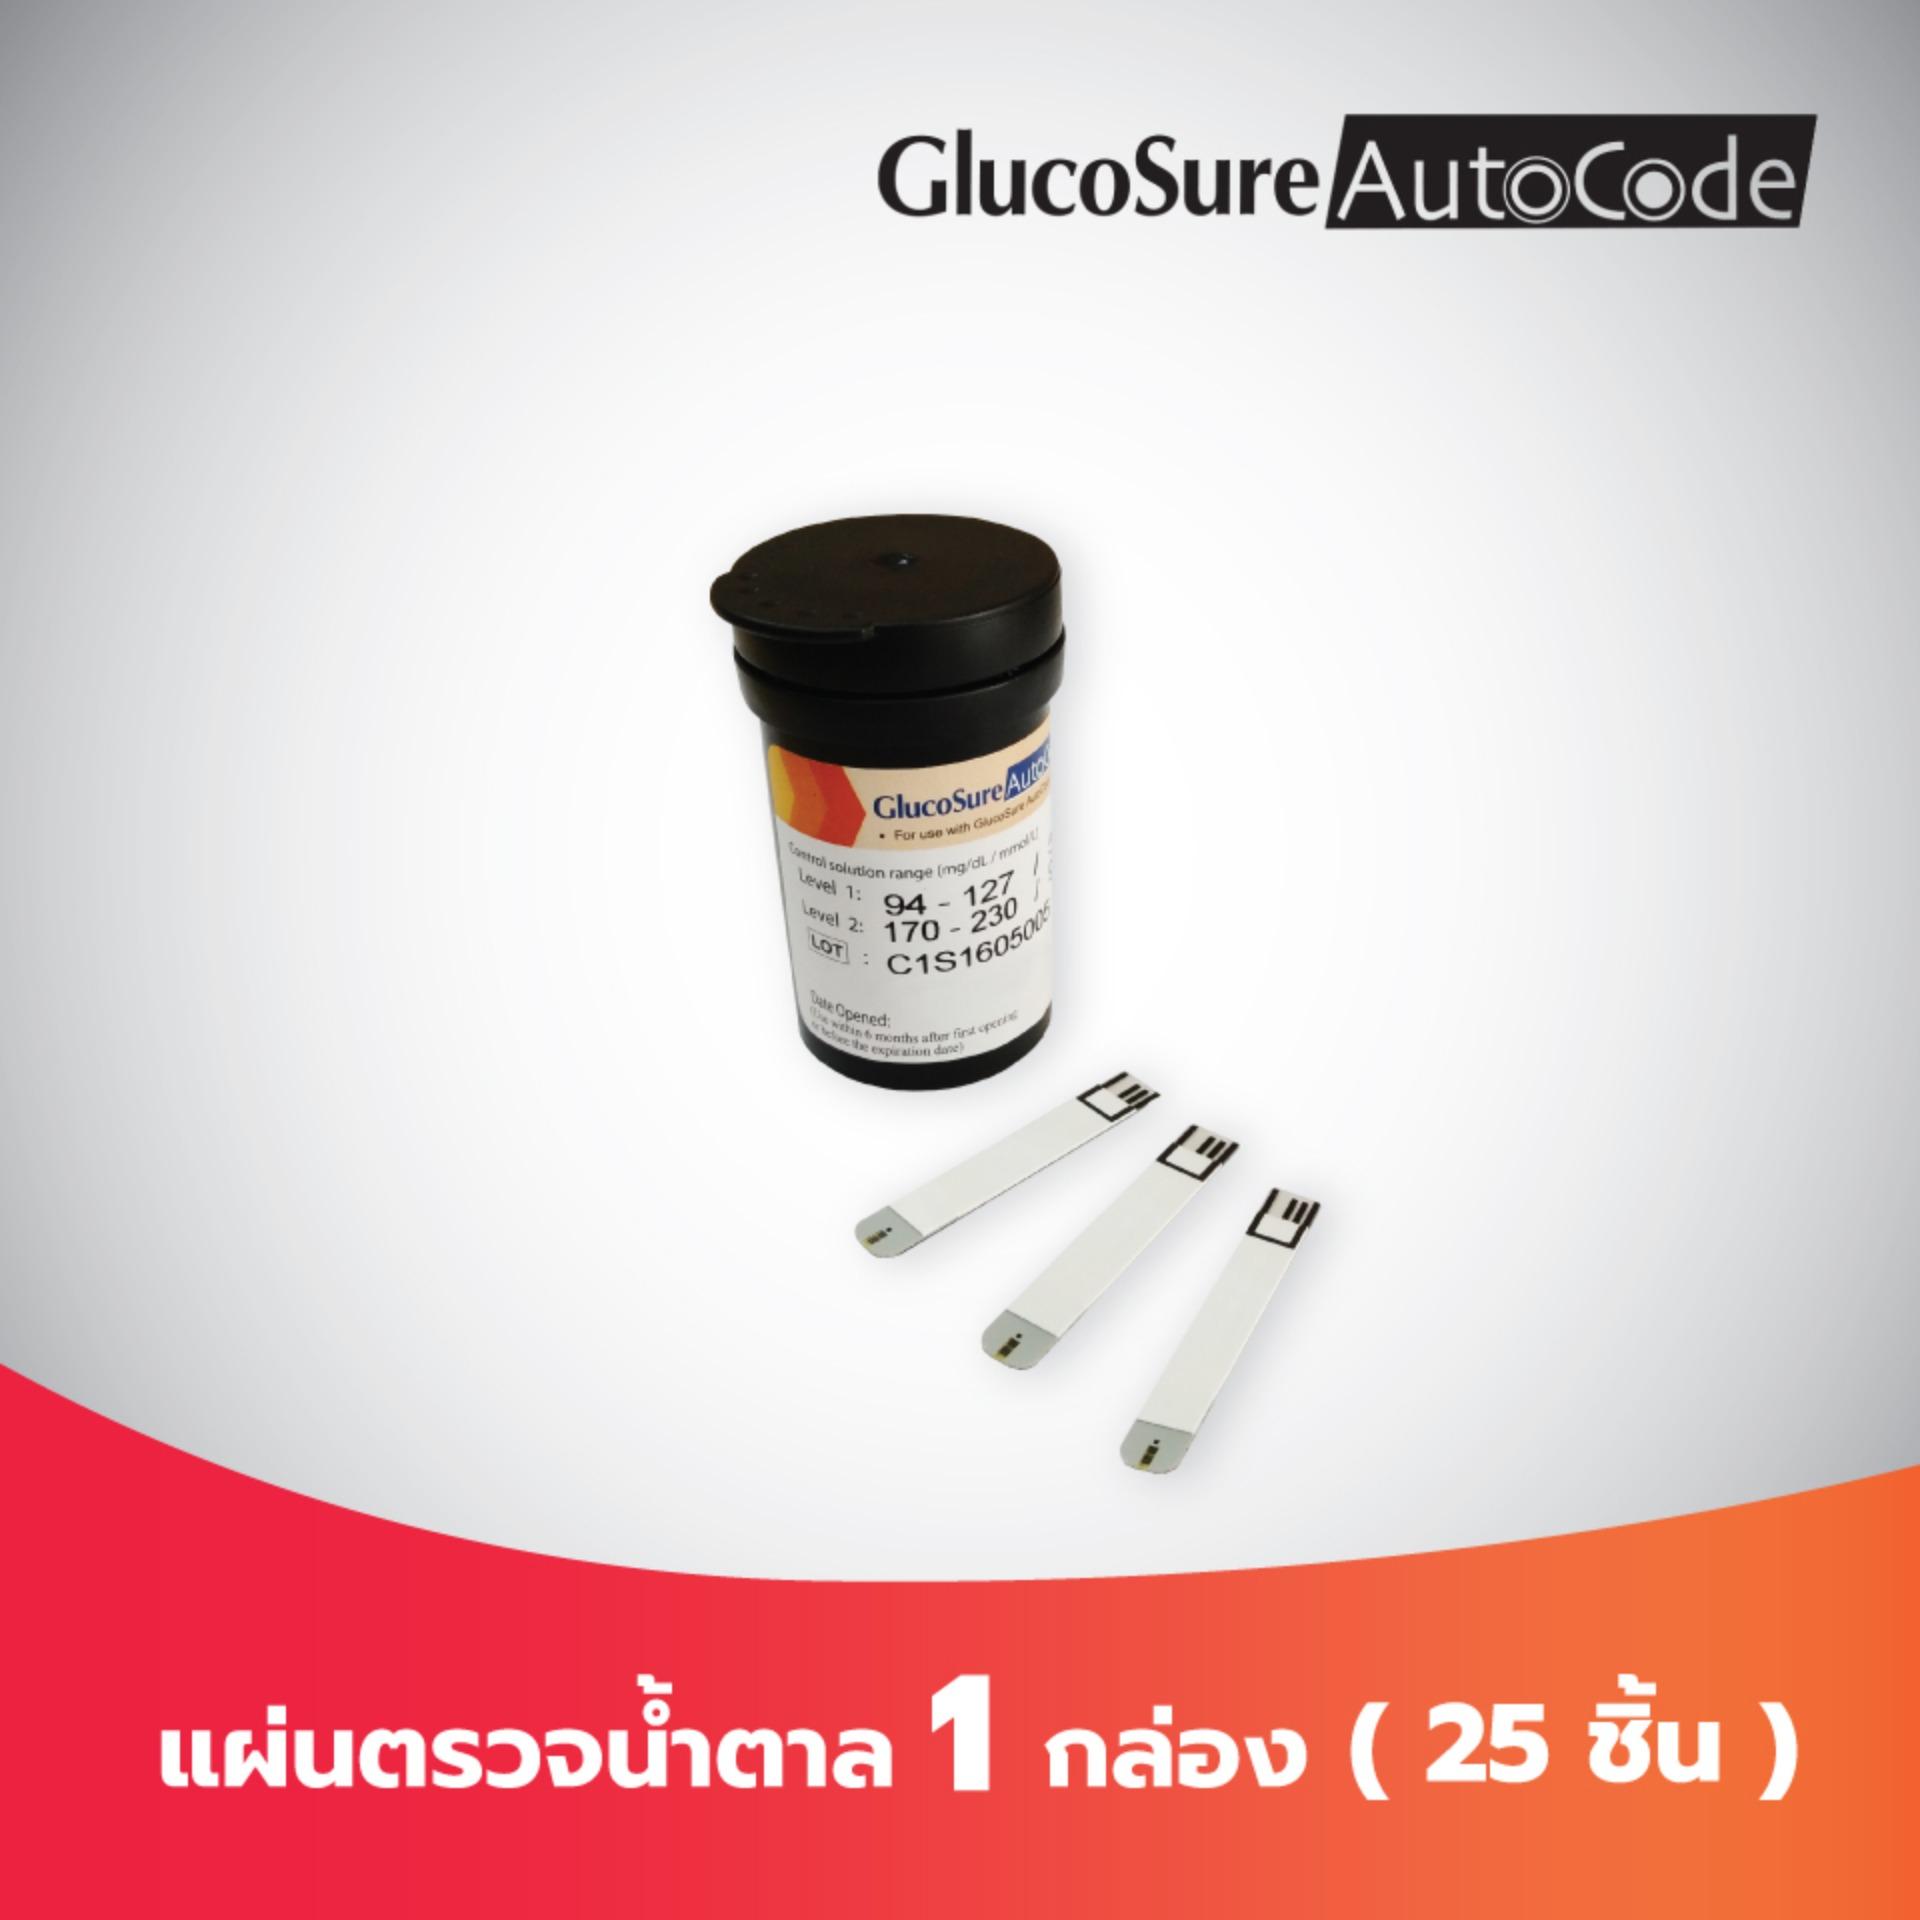 Glucosure Autocode Test Strip แผ่นตรวจน้ำตาลในเลือด 1 กล่อง (25 ชิ้น/กล่อง)